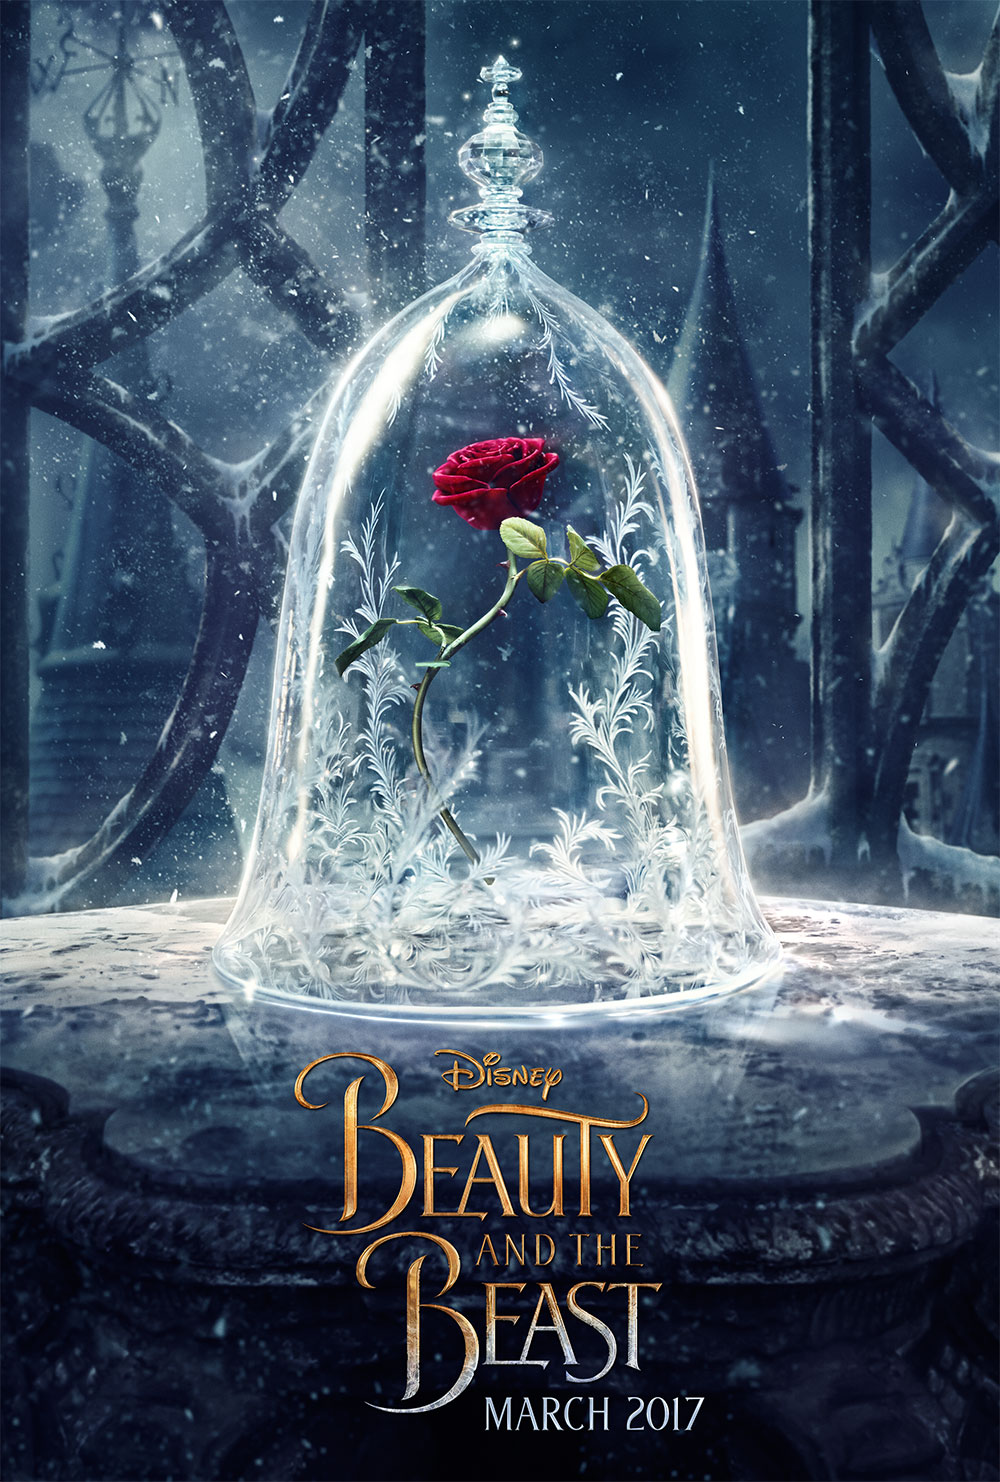 Emma Watson & Dan Stevens Star in Disney’s “Beauty And The Beast”